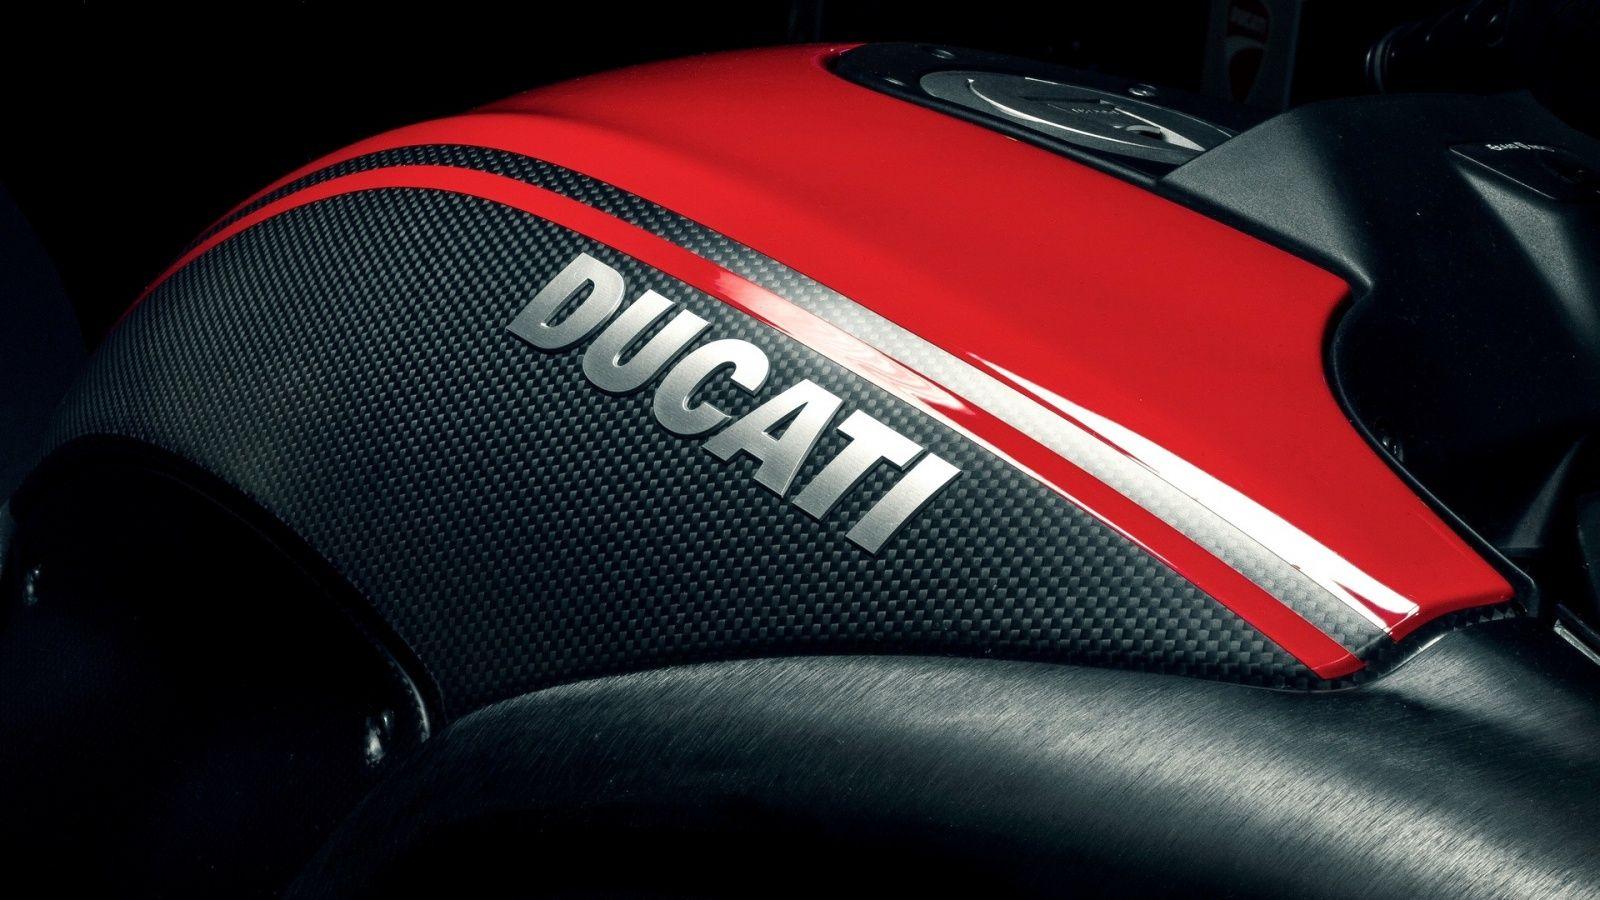 Ducati Diavel Carbon Wallpaper